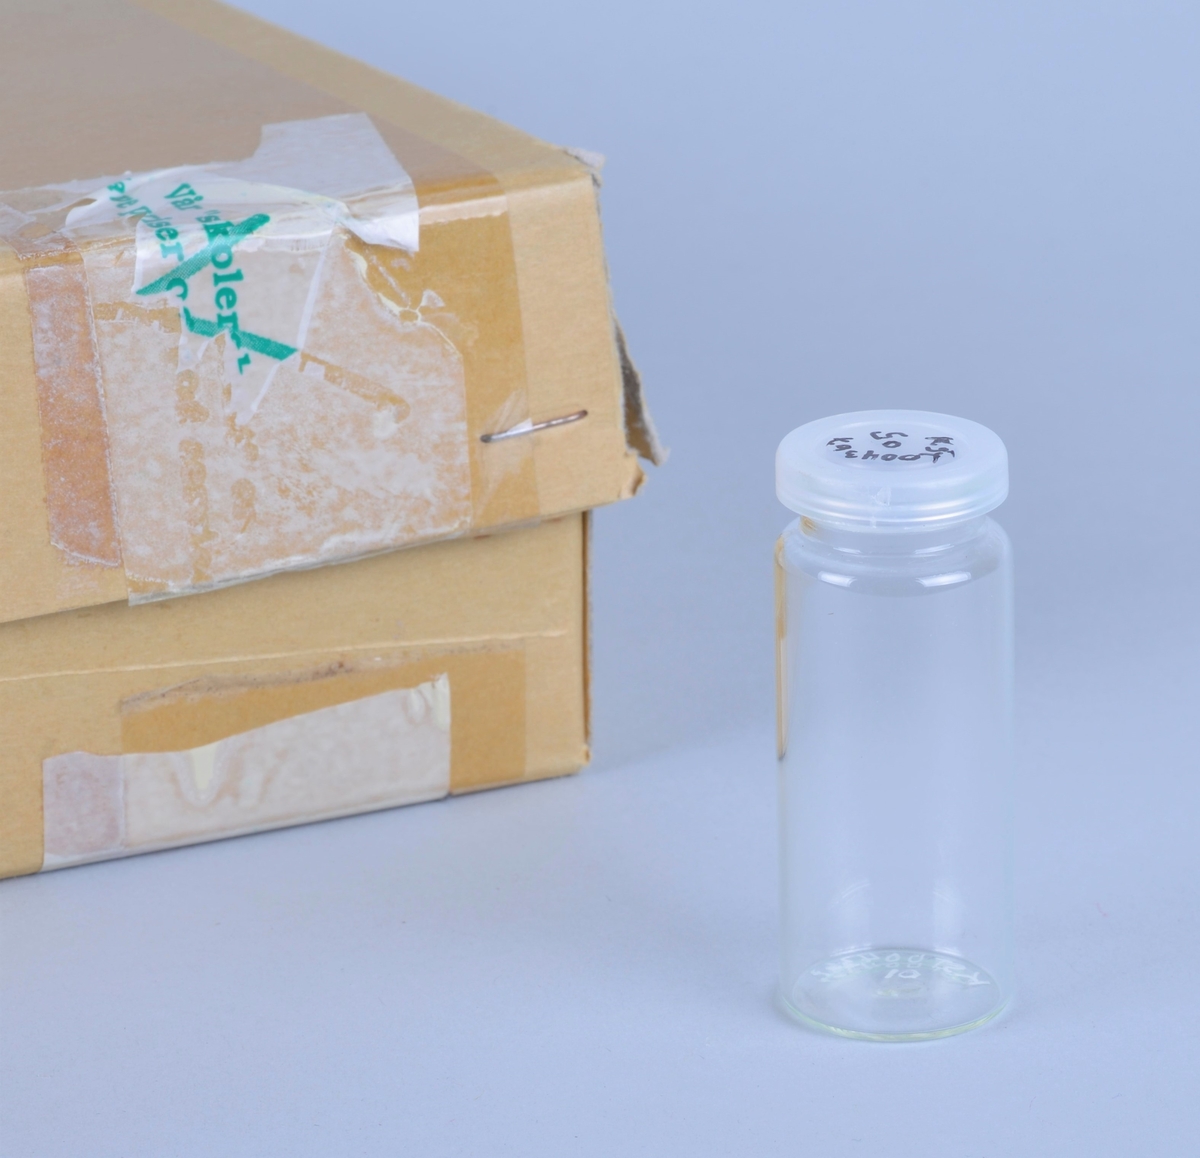 100 små, sylindriske glass med tilhørende plastlokk (130 stk).
Kanskje brukt ved prøvetaking eller oppbevaring av prøver.
Oppbevart i en pappeske